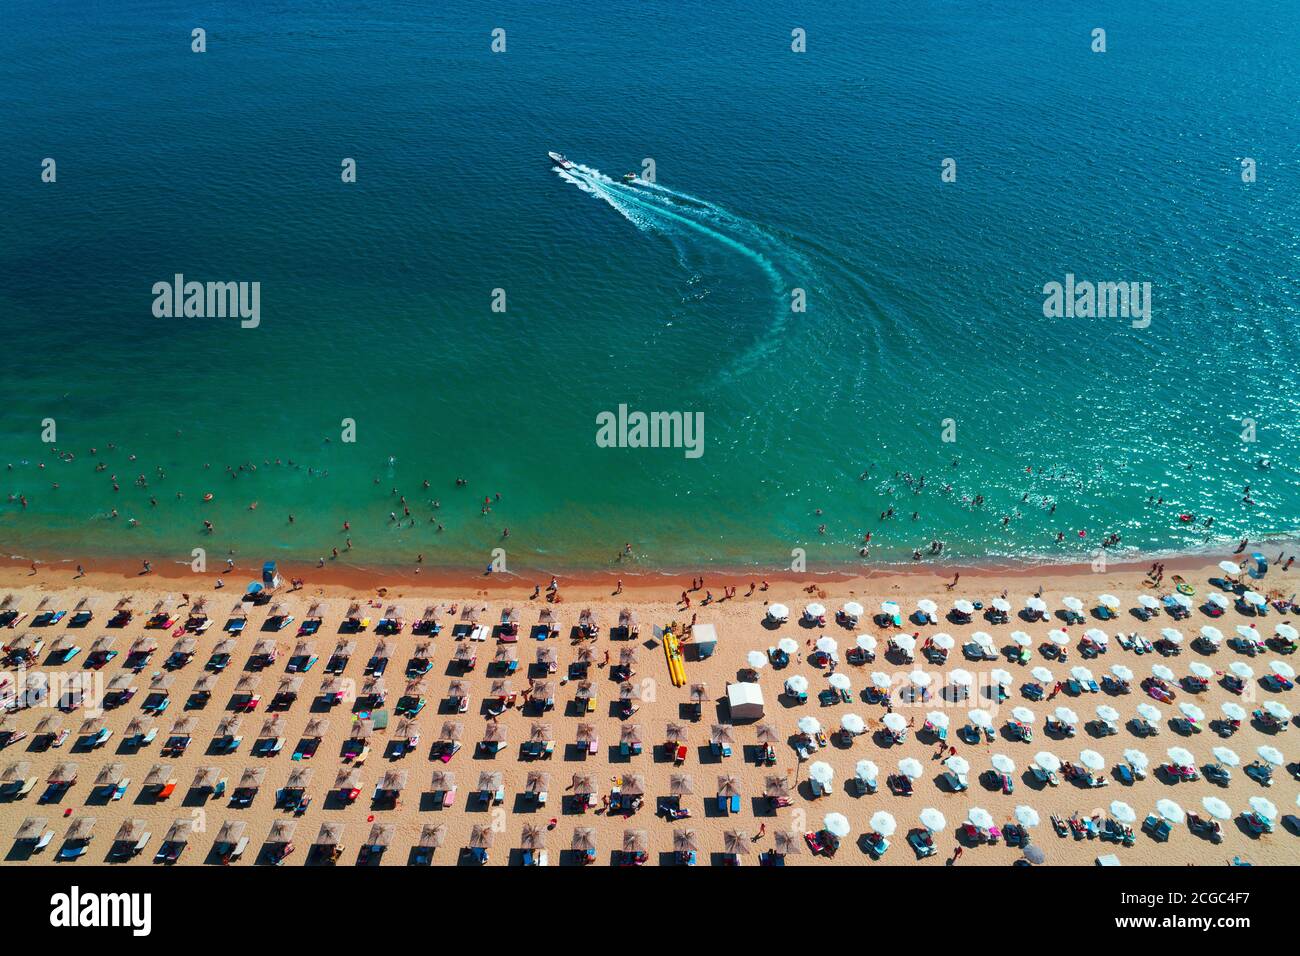 Vue aérienne sur la mer, la plage, le sable, les parasols et les sports nautiques. Paysage marin d'été. Banque D'Images